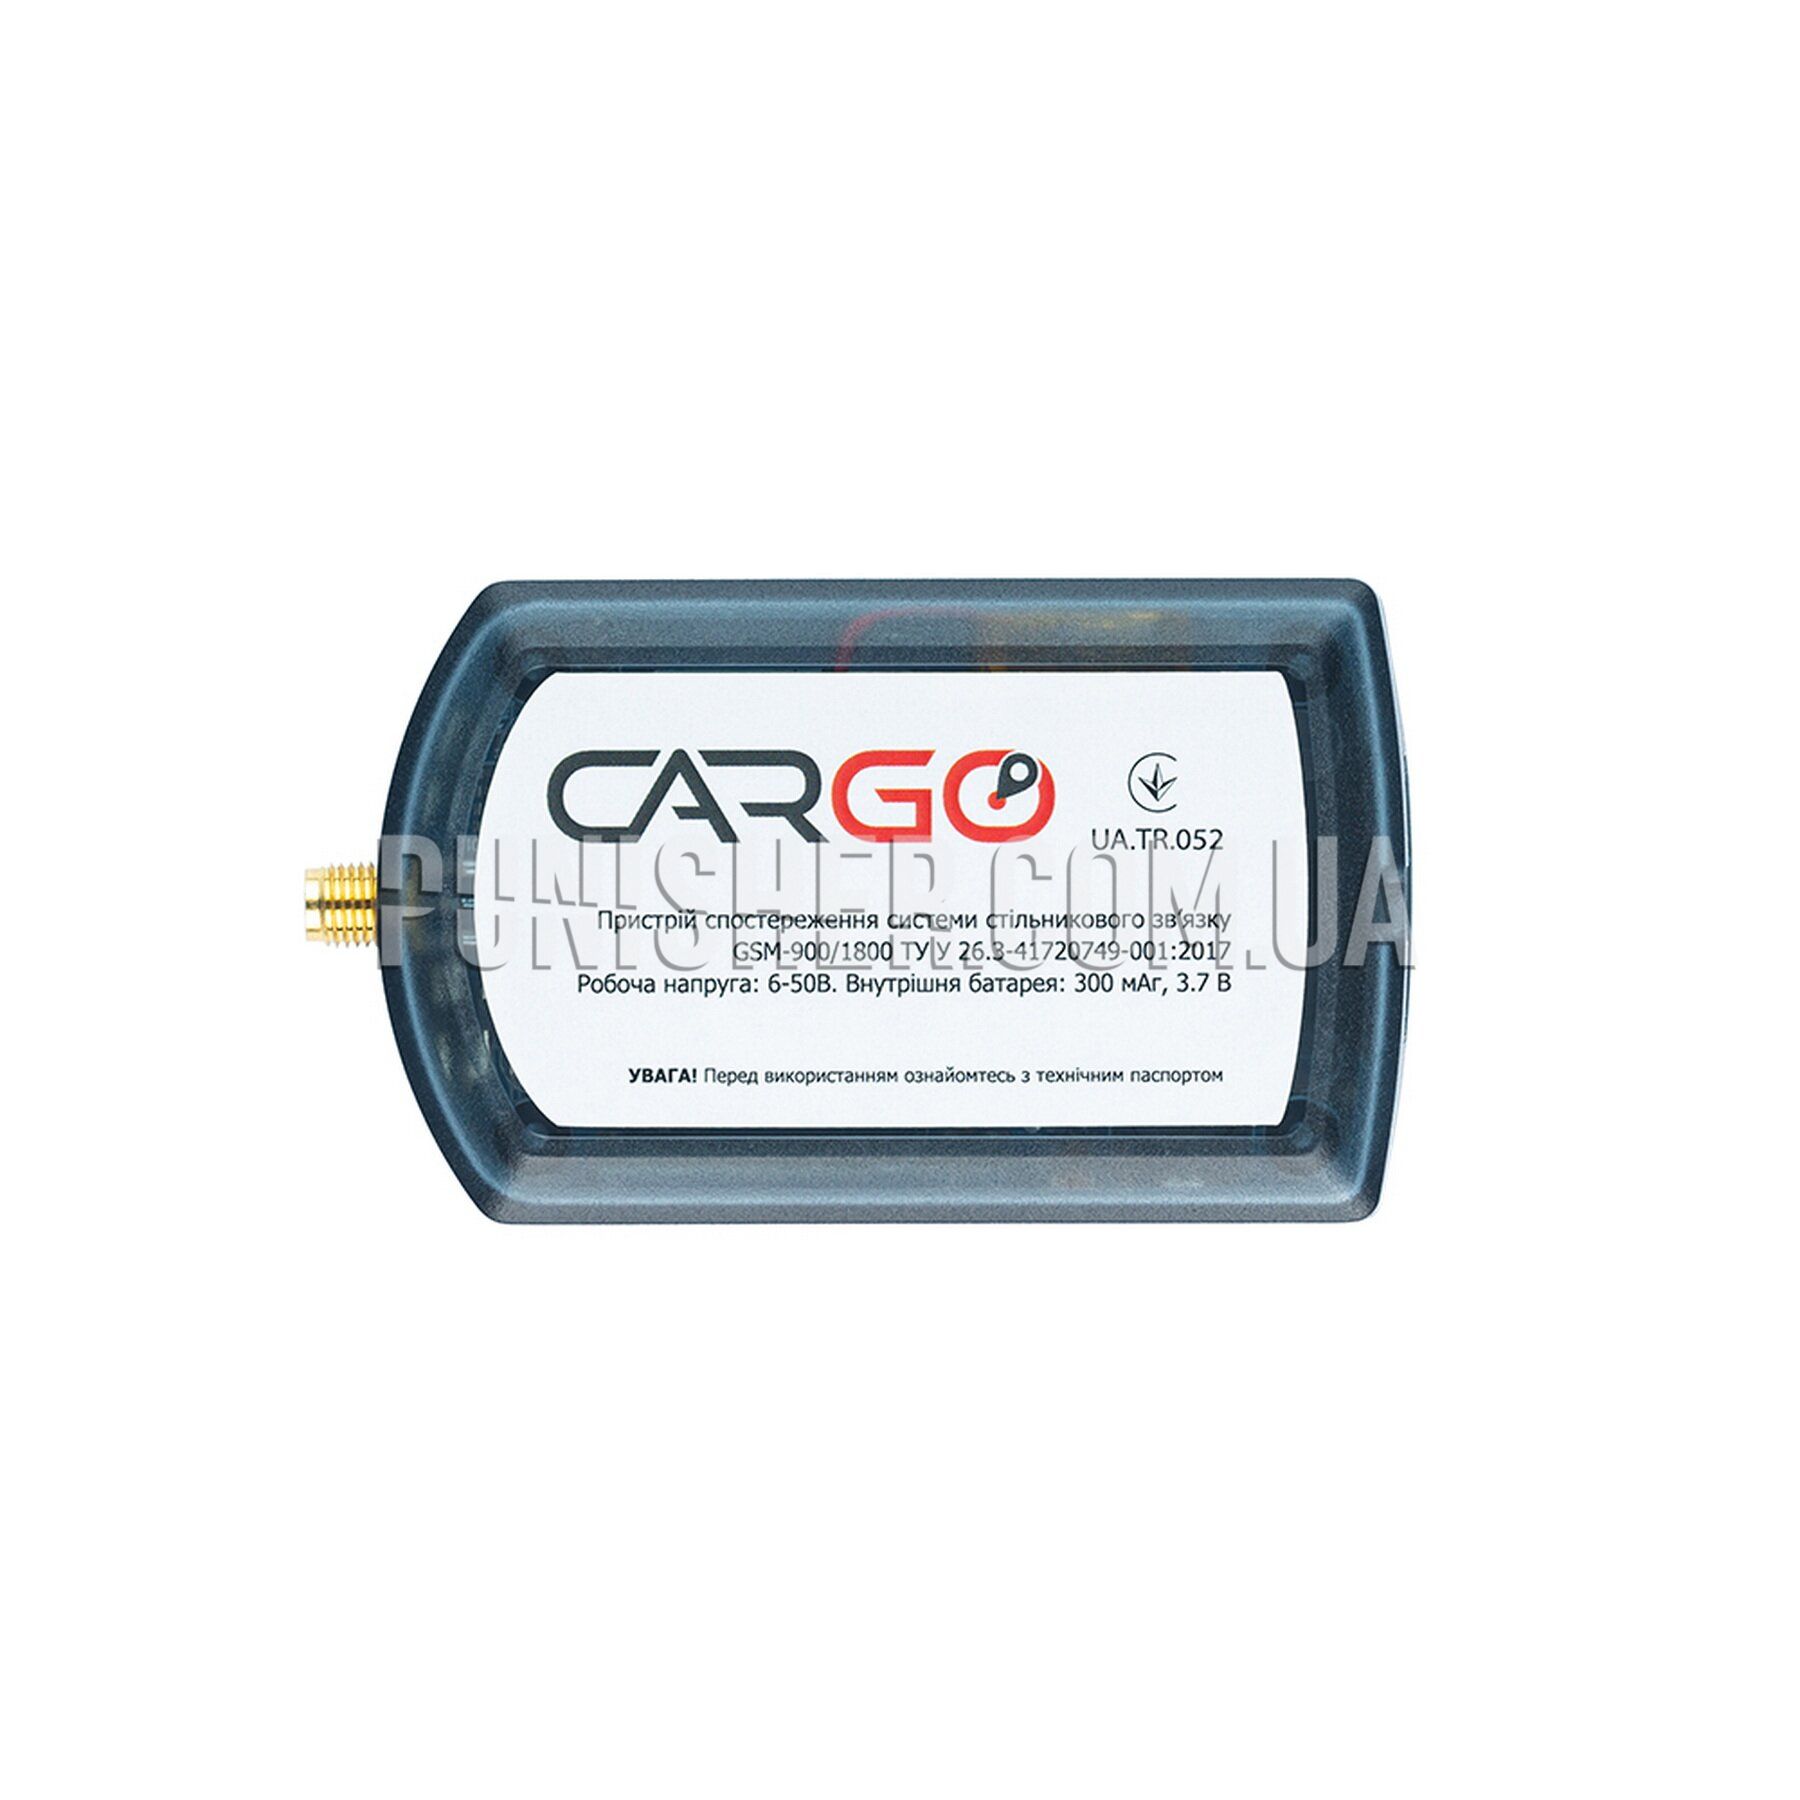 Cargo Mini 2 GPS Tracker.